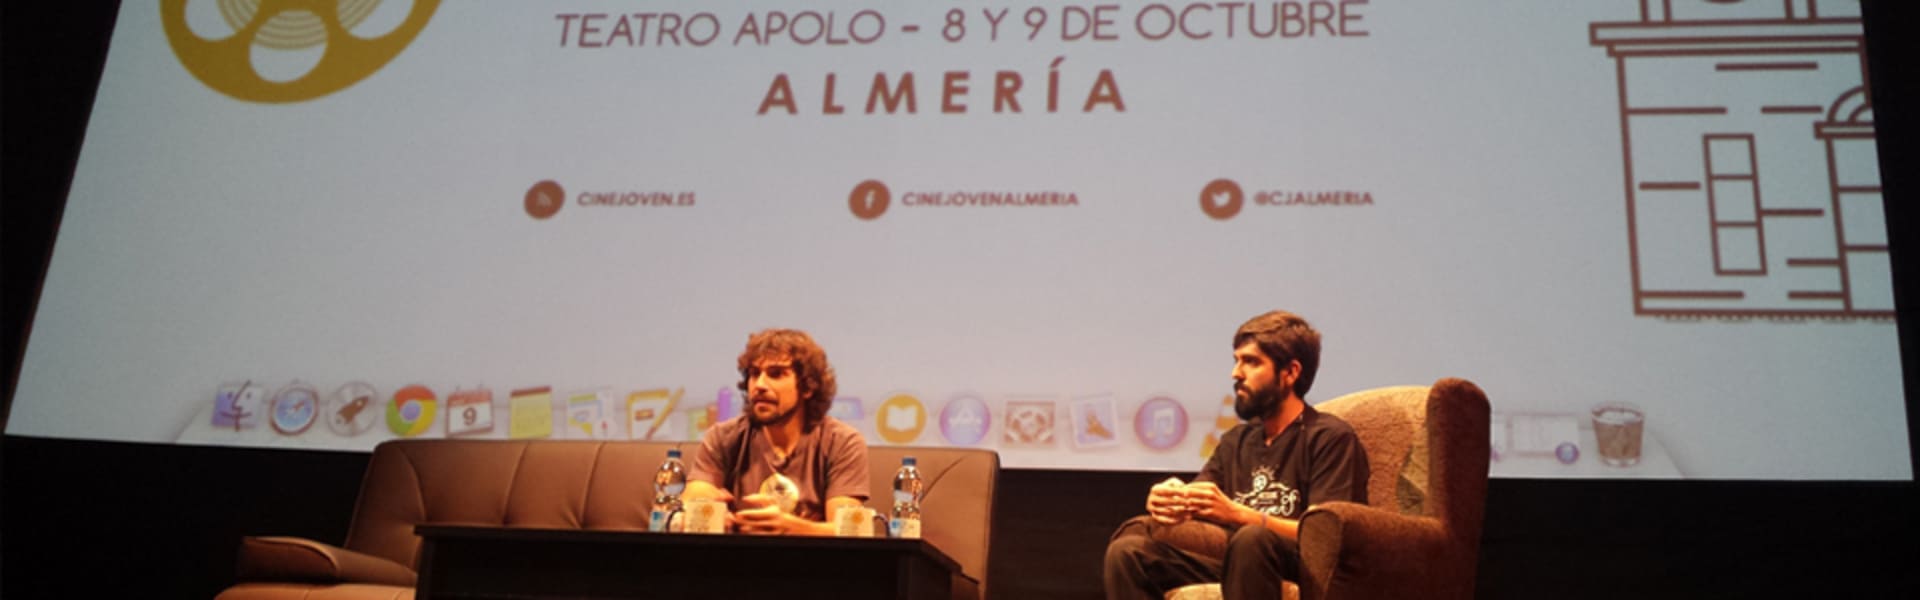 Lecture at the Festival Cine Joven de Almería. October 2014